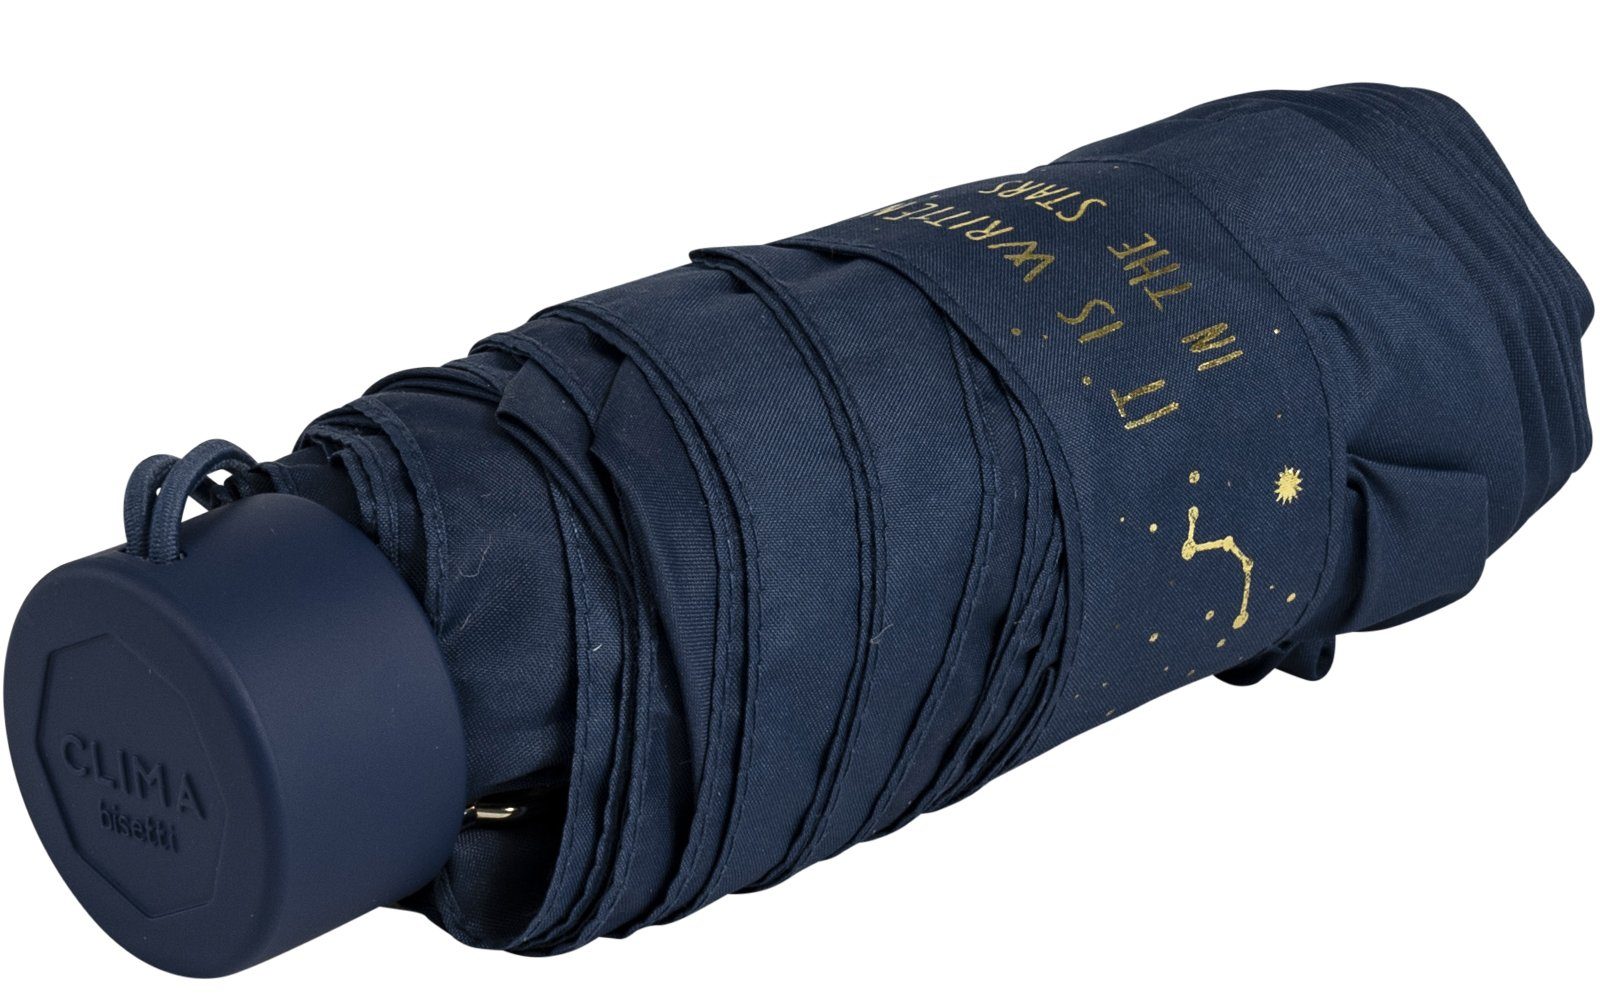 bisetti Taschenregenschirm Damen-Regenschirm, klein, goldenem blau, navy Aufdruck dem Schließband und auf stabil kompakt, mit